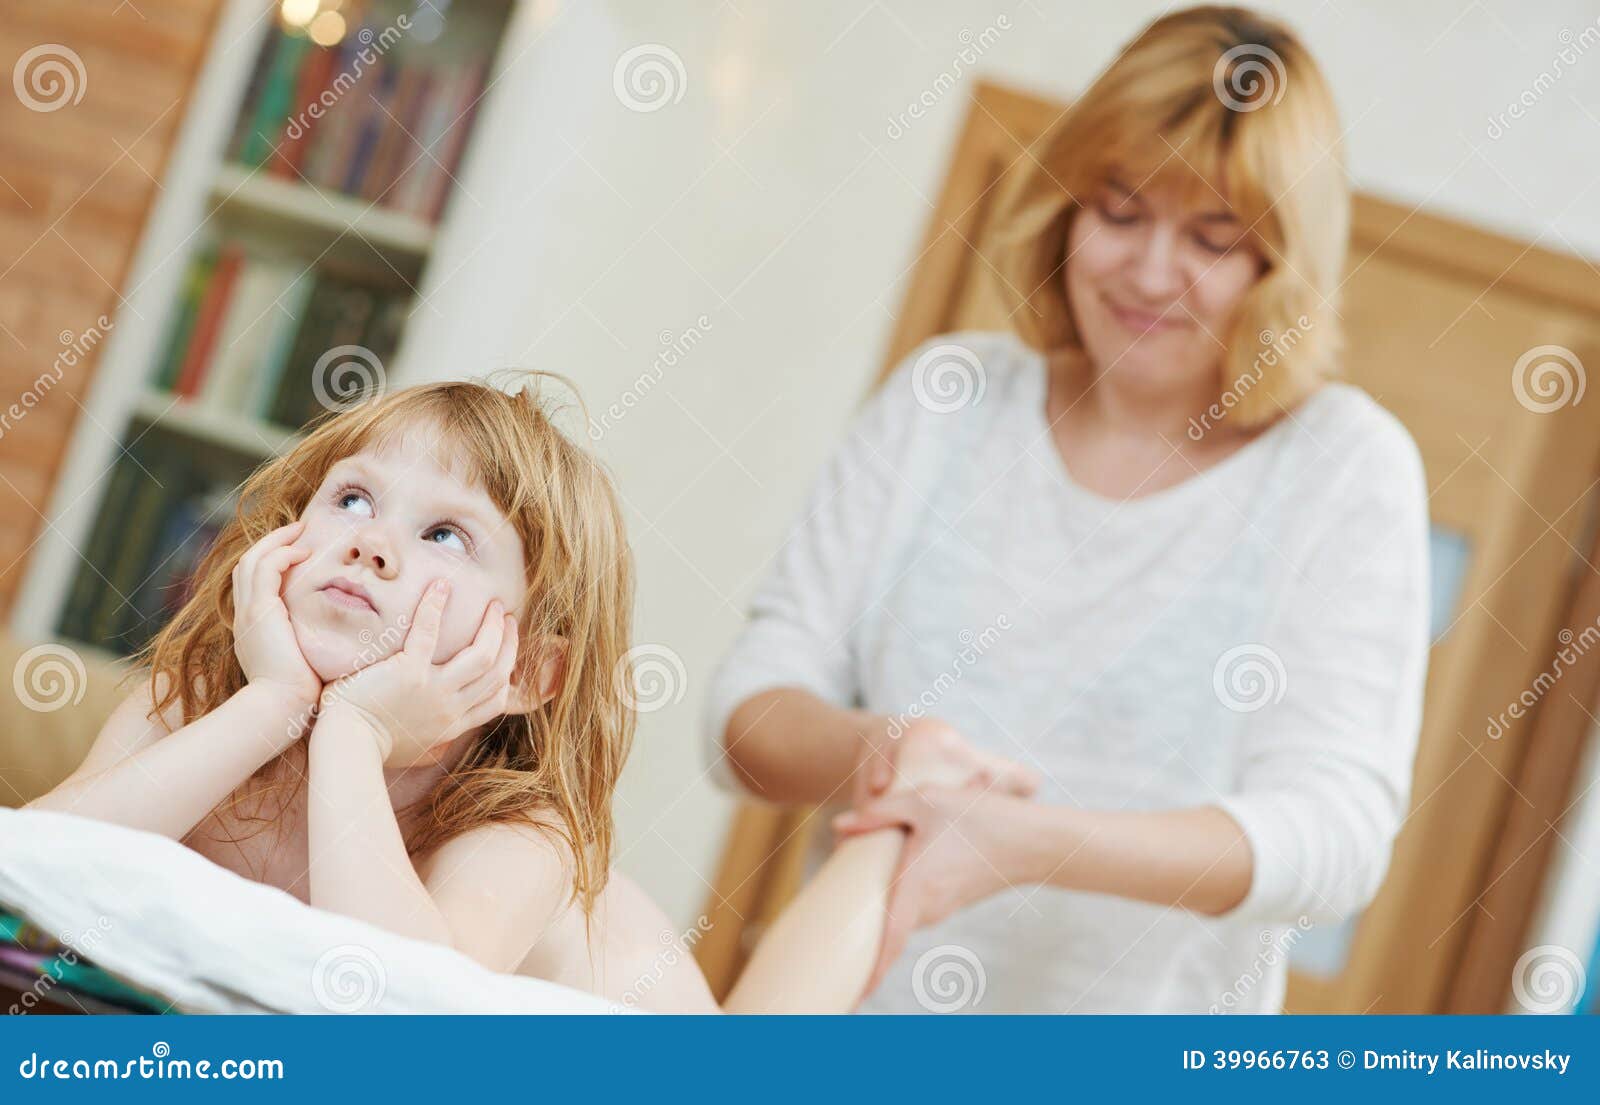 Мама делает массаж дочери. Мама делает массаж ребенку. Мама и ребенок массаж. Детский массаж девочке. Массаж для детей девочек.